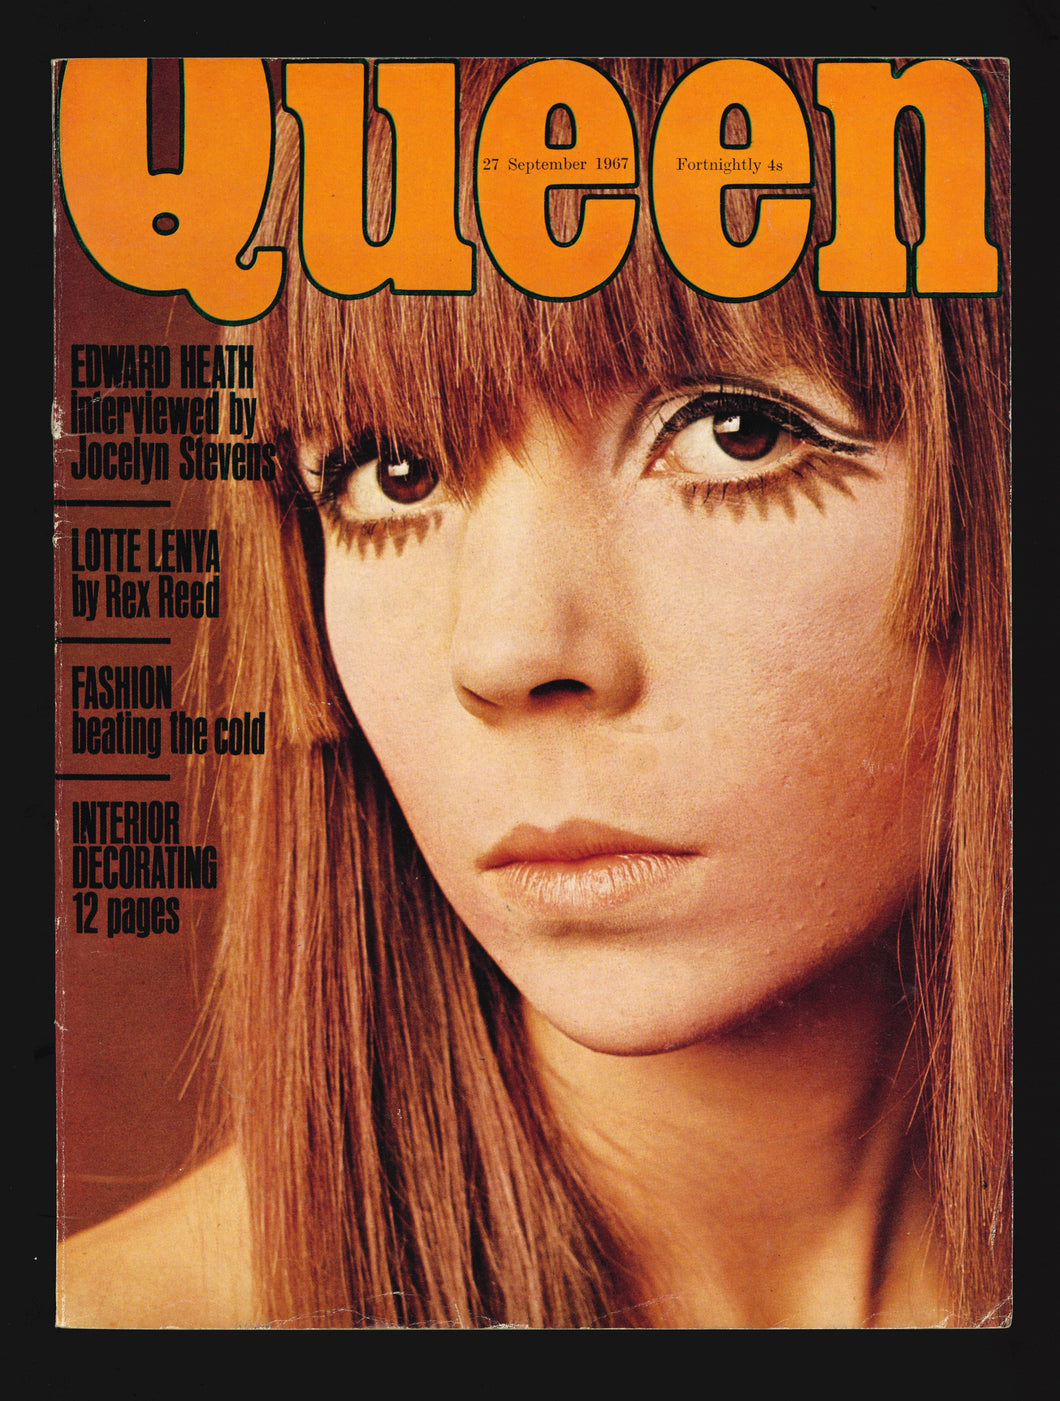 Queen Sept 27 1967 - Penelope Tree